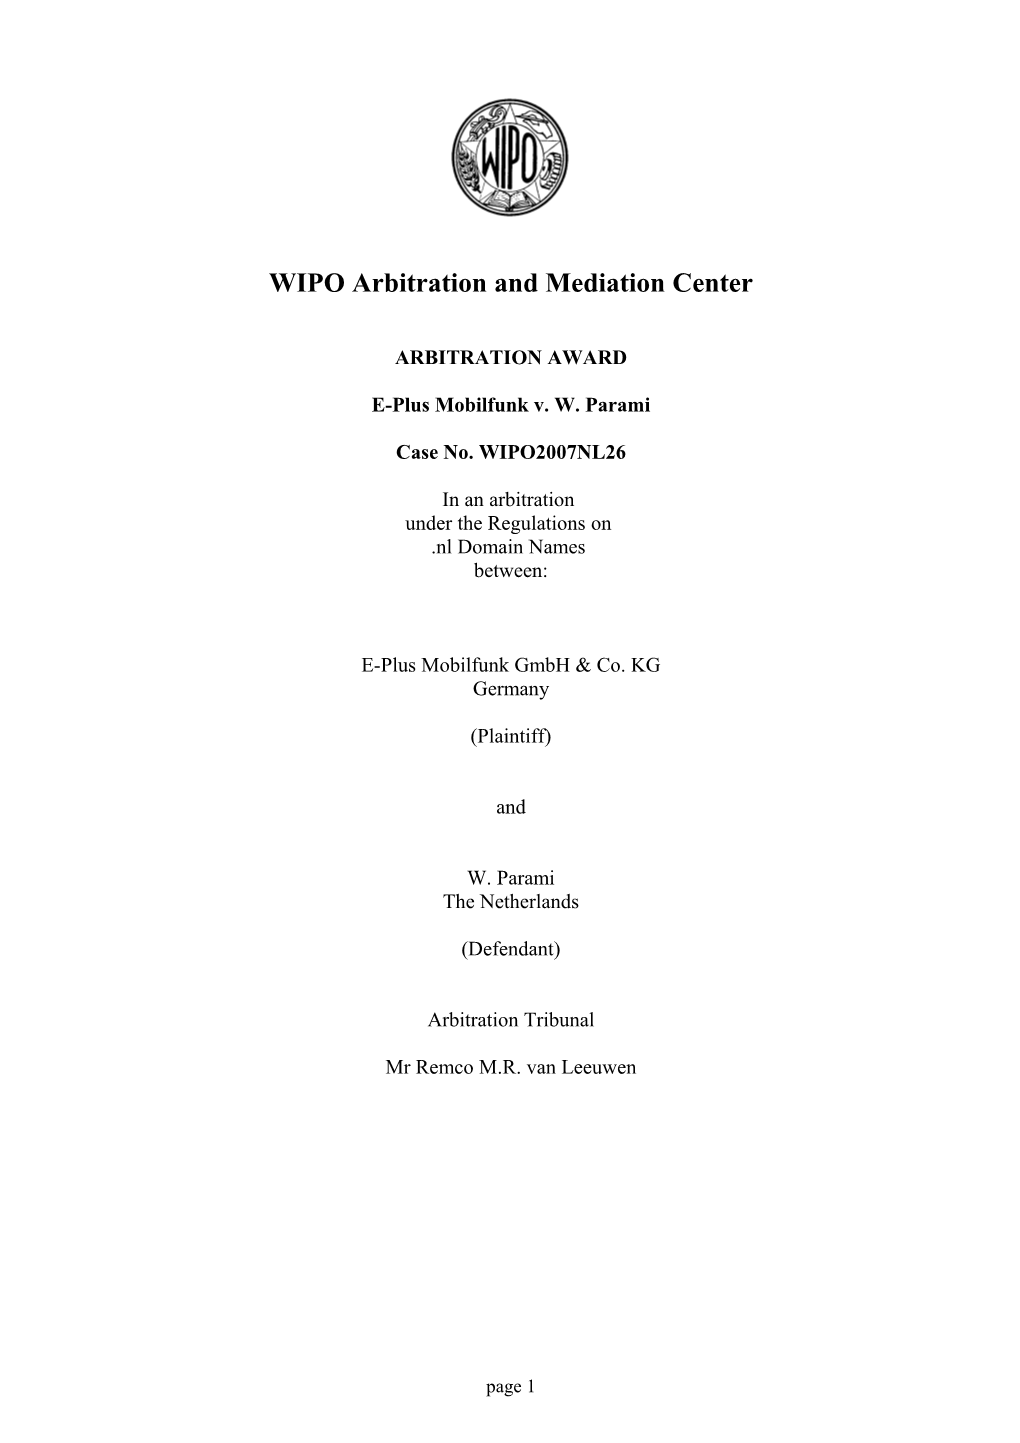 Arbitration Award Case No. WIPO2007NL26